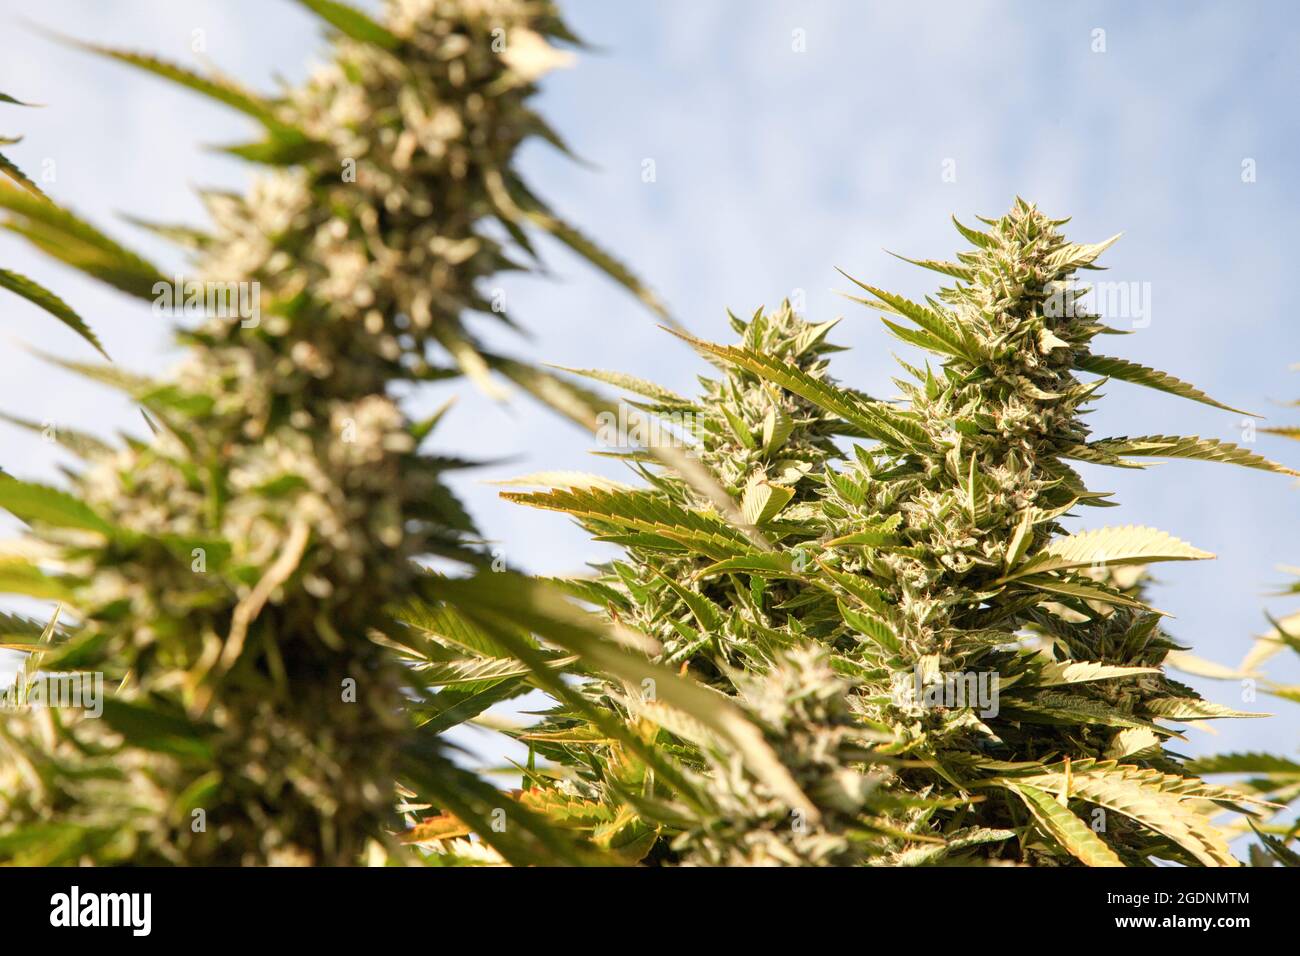 Blume Cannabis (Cannabis sativa). Cannabis enthält eine Gruppe von Chemikalien, die sogenannten Cannabinoide, die einen entspannenden narkotische Wirkung erzeugen, wenn verbraucht. Stockfoto